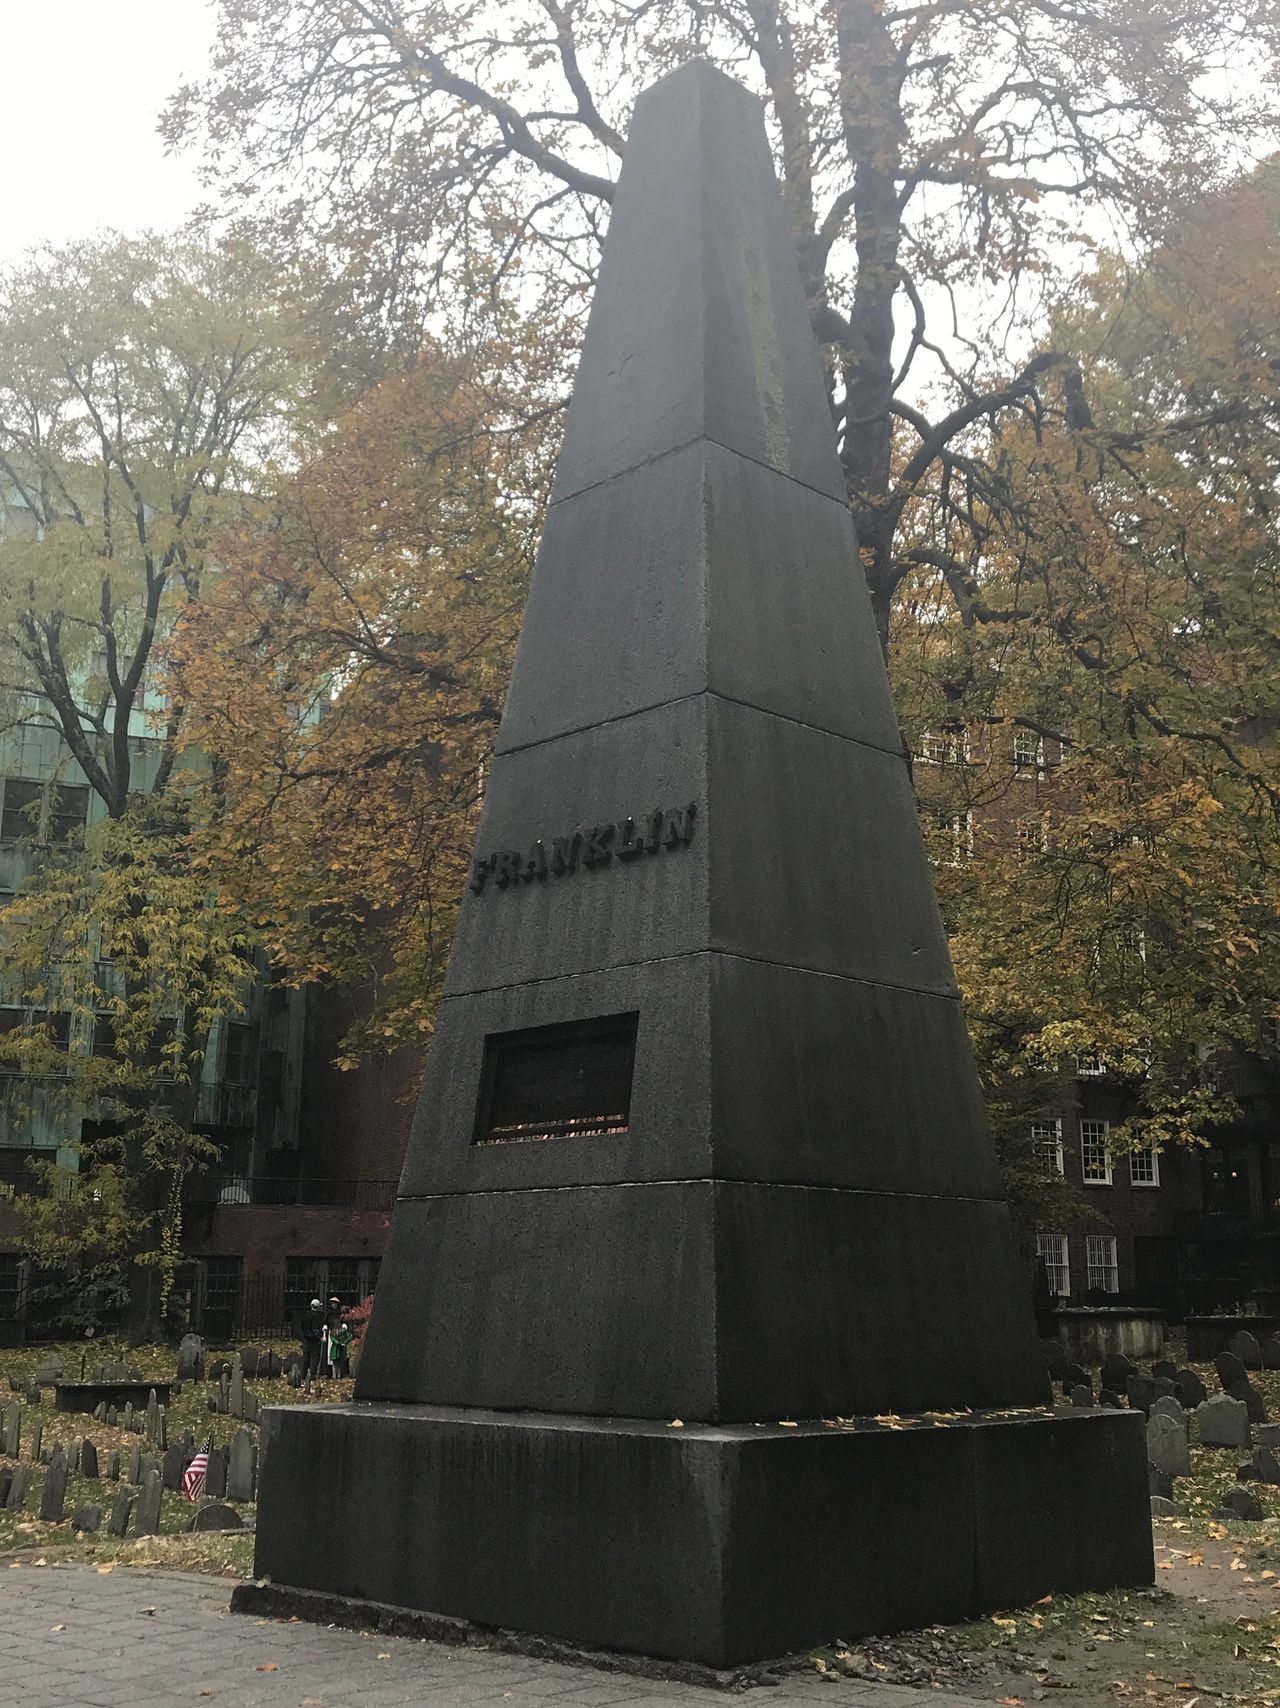 The Franklin Obelisk